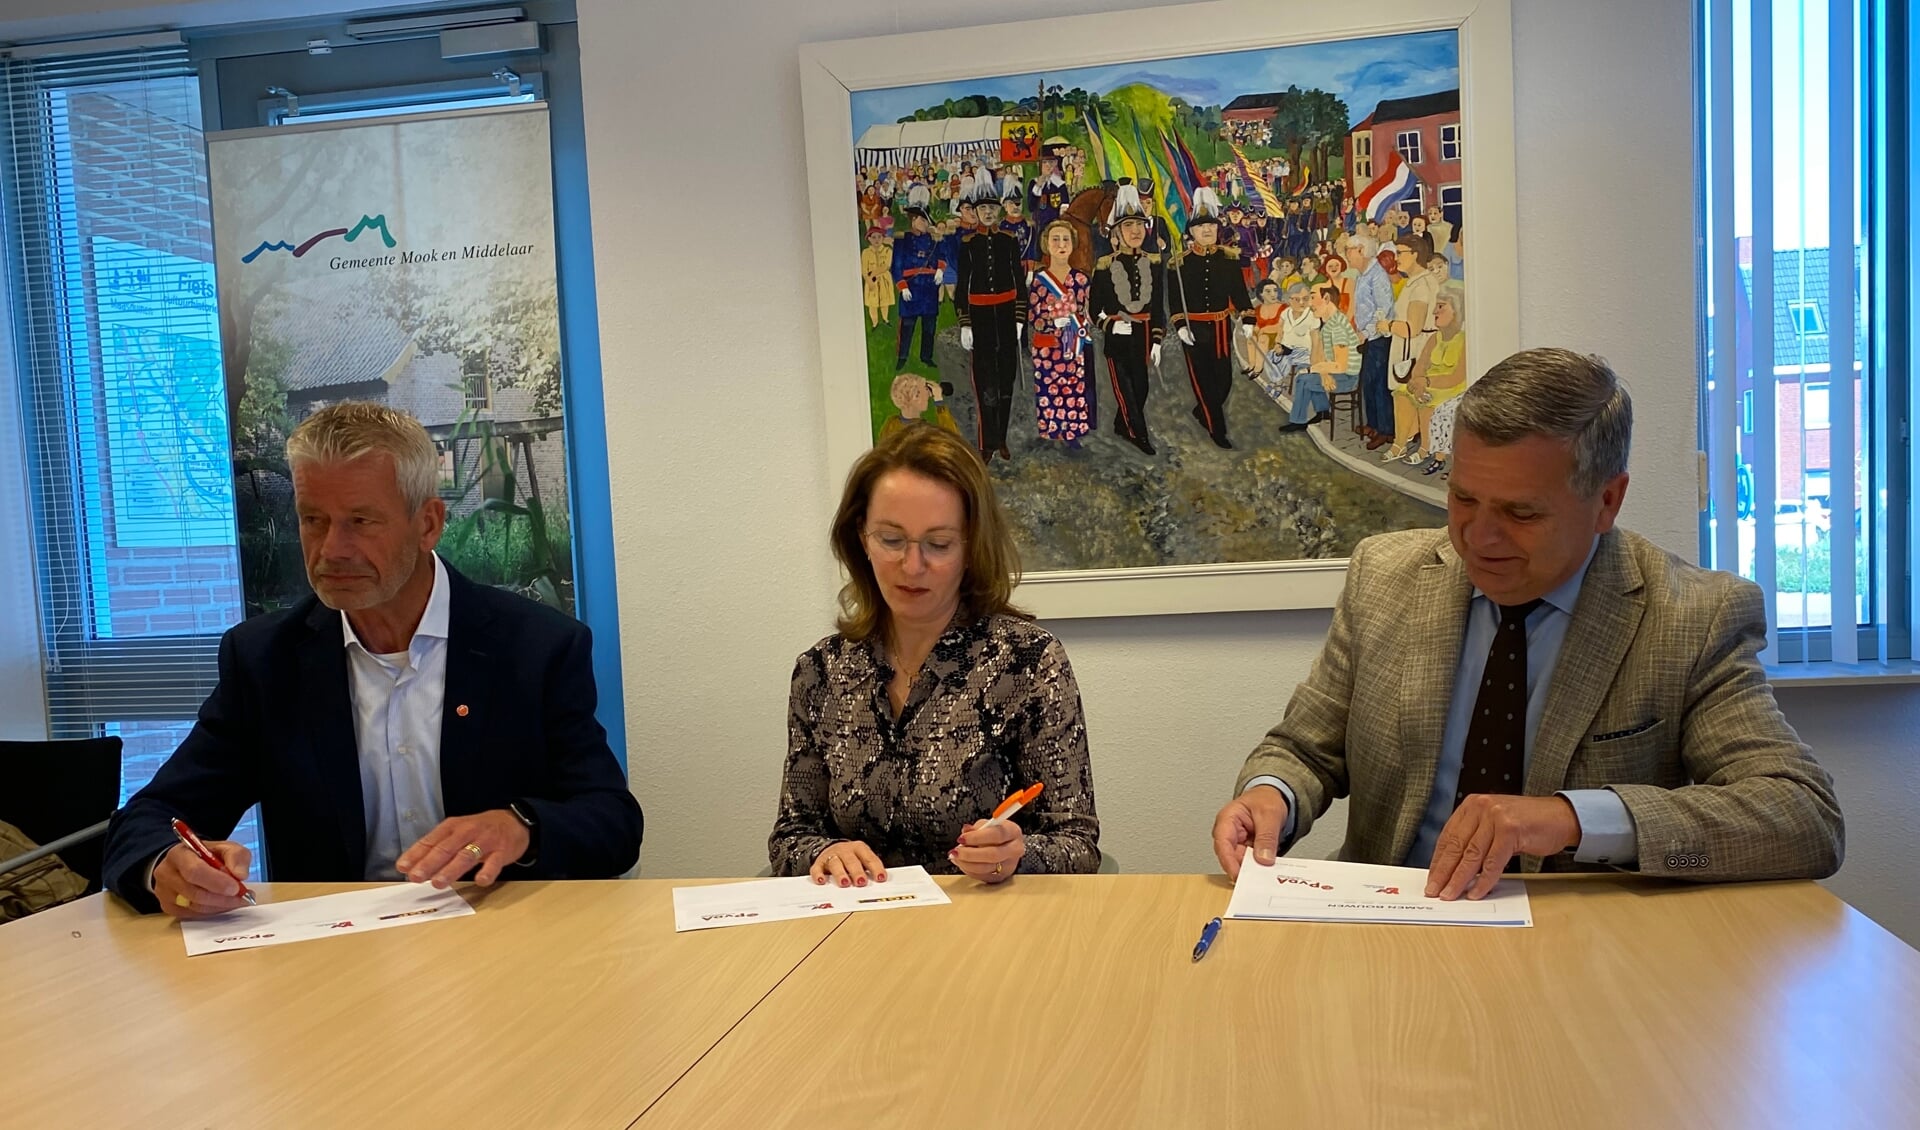 Het coalitieakkoord Samen Bouwen van Mook en Middelaar is ondertekend door(vanaf links) Ton Broekmans, Cornelieke van den Bergh-Visser en Ton Herings.